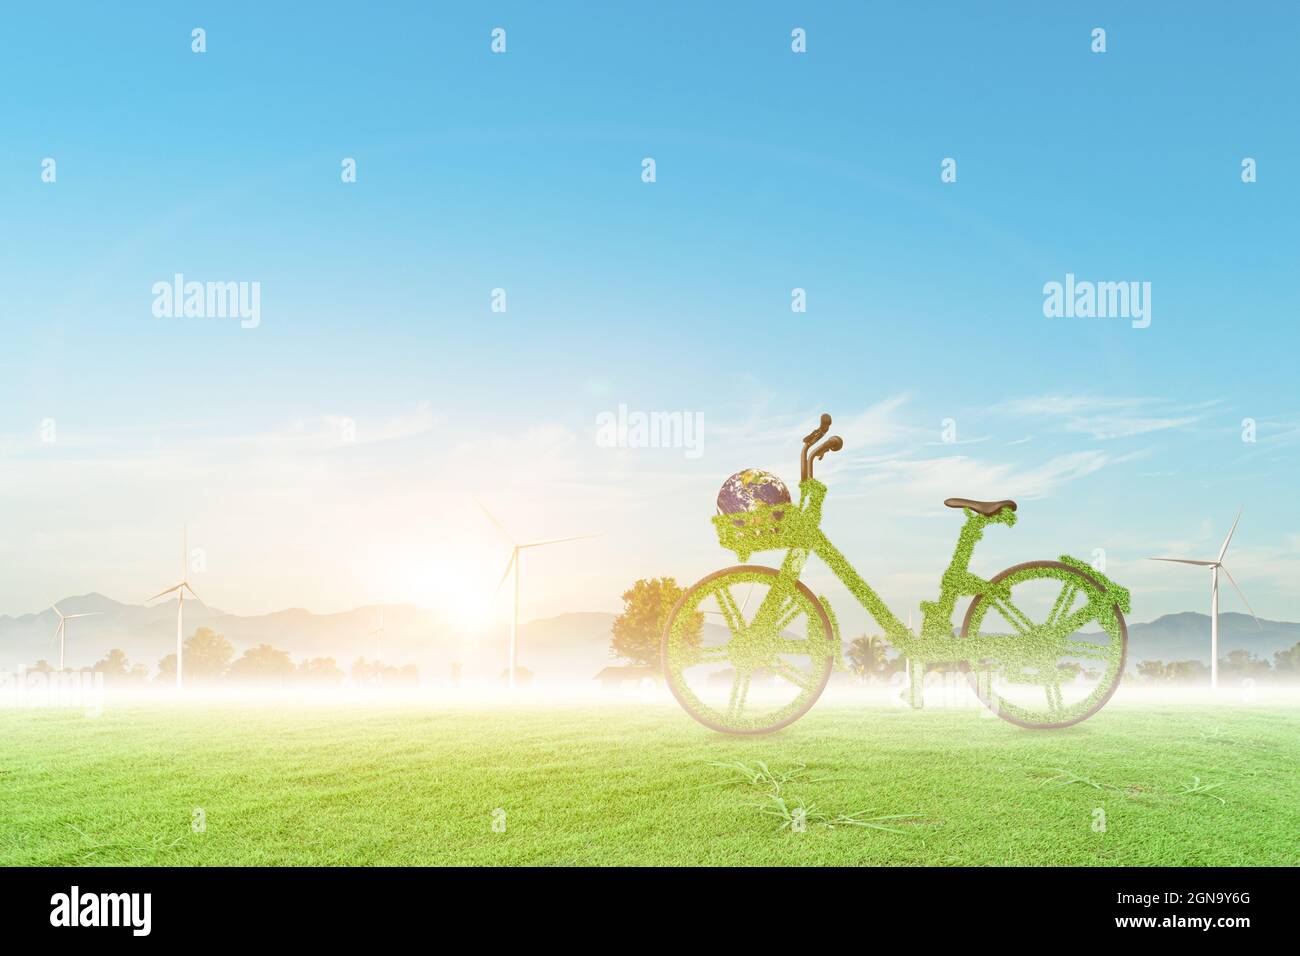 Vélo vert et globe sur le champ de l'éolienne avec fond bleu ciel. Concept écologique. Banque D'Images